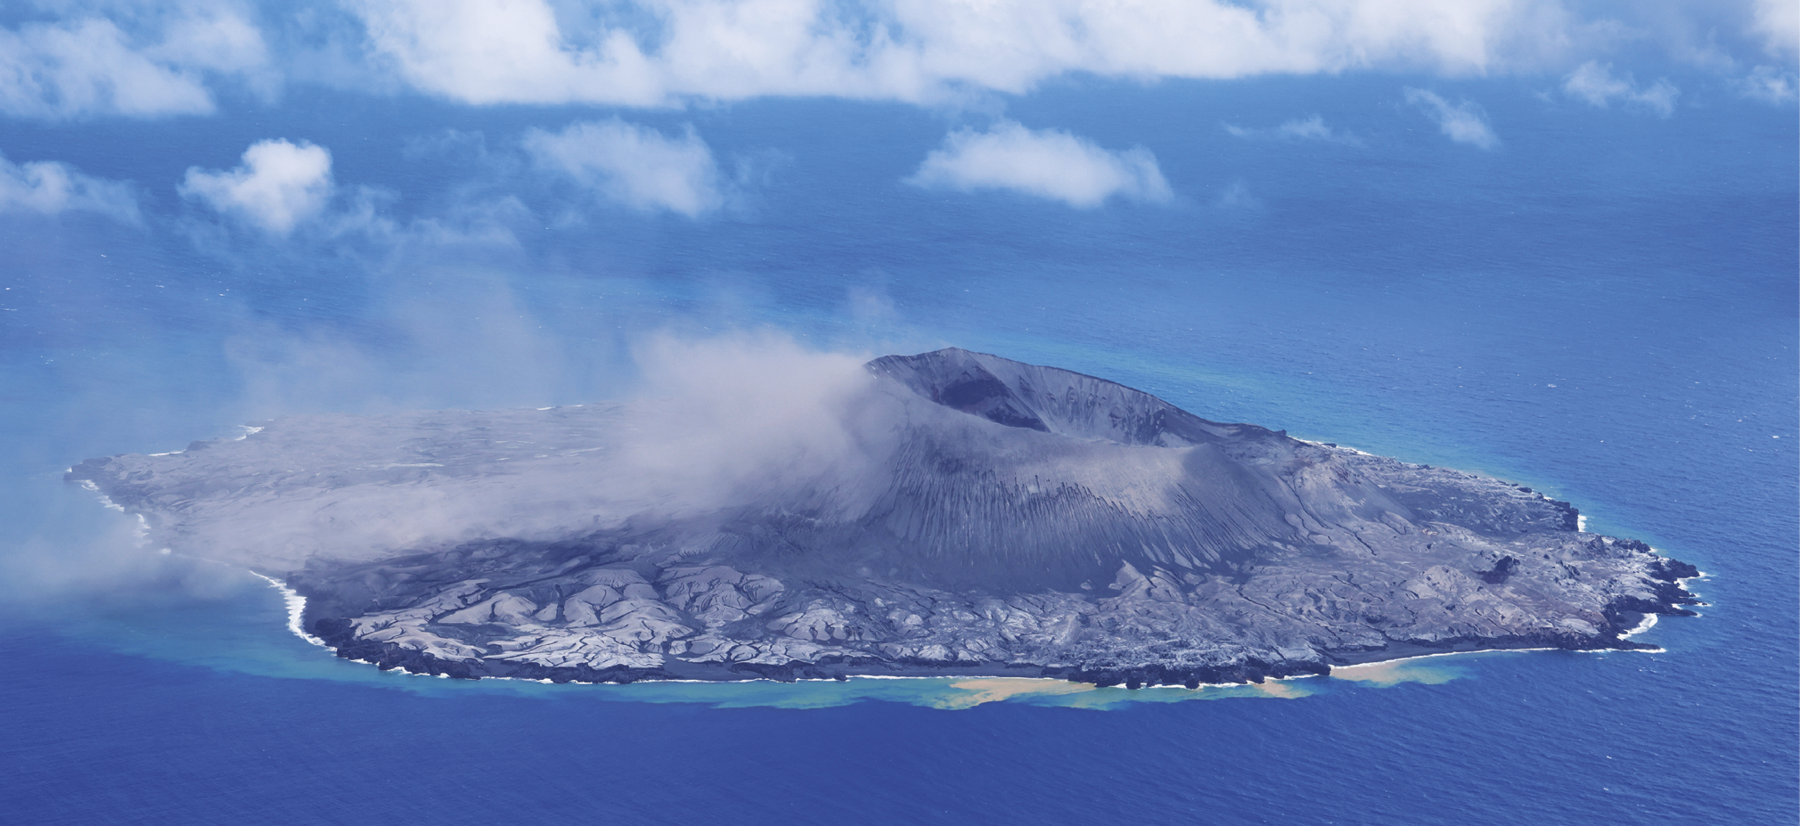 Fotografia. Vista aérea de uma ilha cujo centro é ocupado por um vulcão com a superfície rochosa em tons de cinza escuro. O centro do vulcão possui uma grande cavidade arredondada. Ao redor do vulcão, o terreno apresenta um tom de cinza mais claro. Ao redor da ilha há água em tons de azul. O céu, igualmente azul, apresenta algumas nuvens.